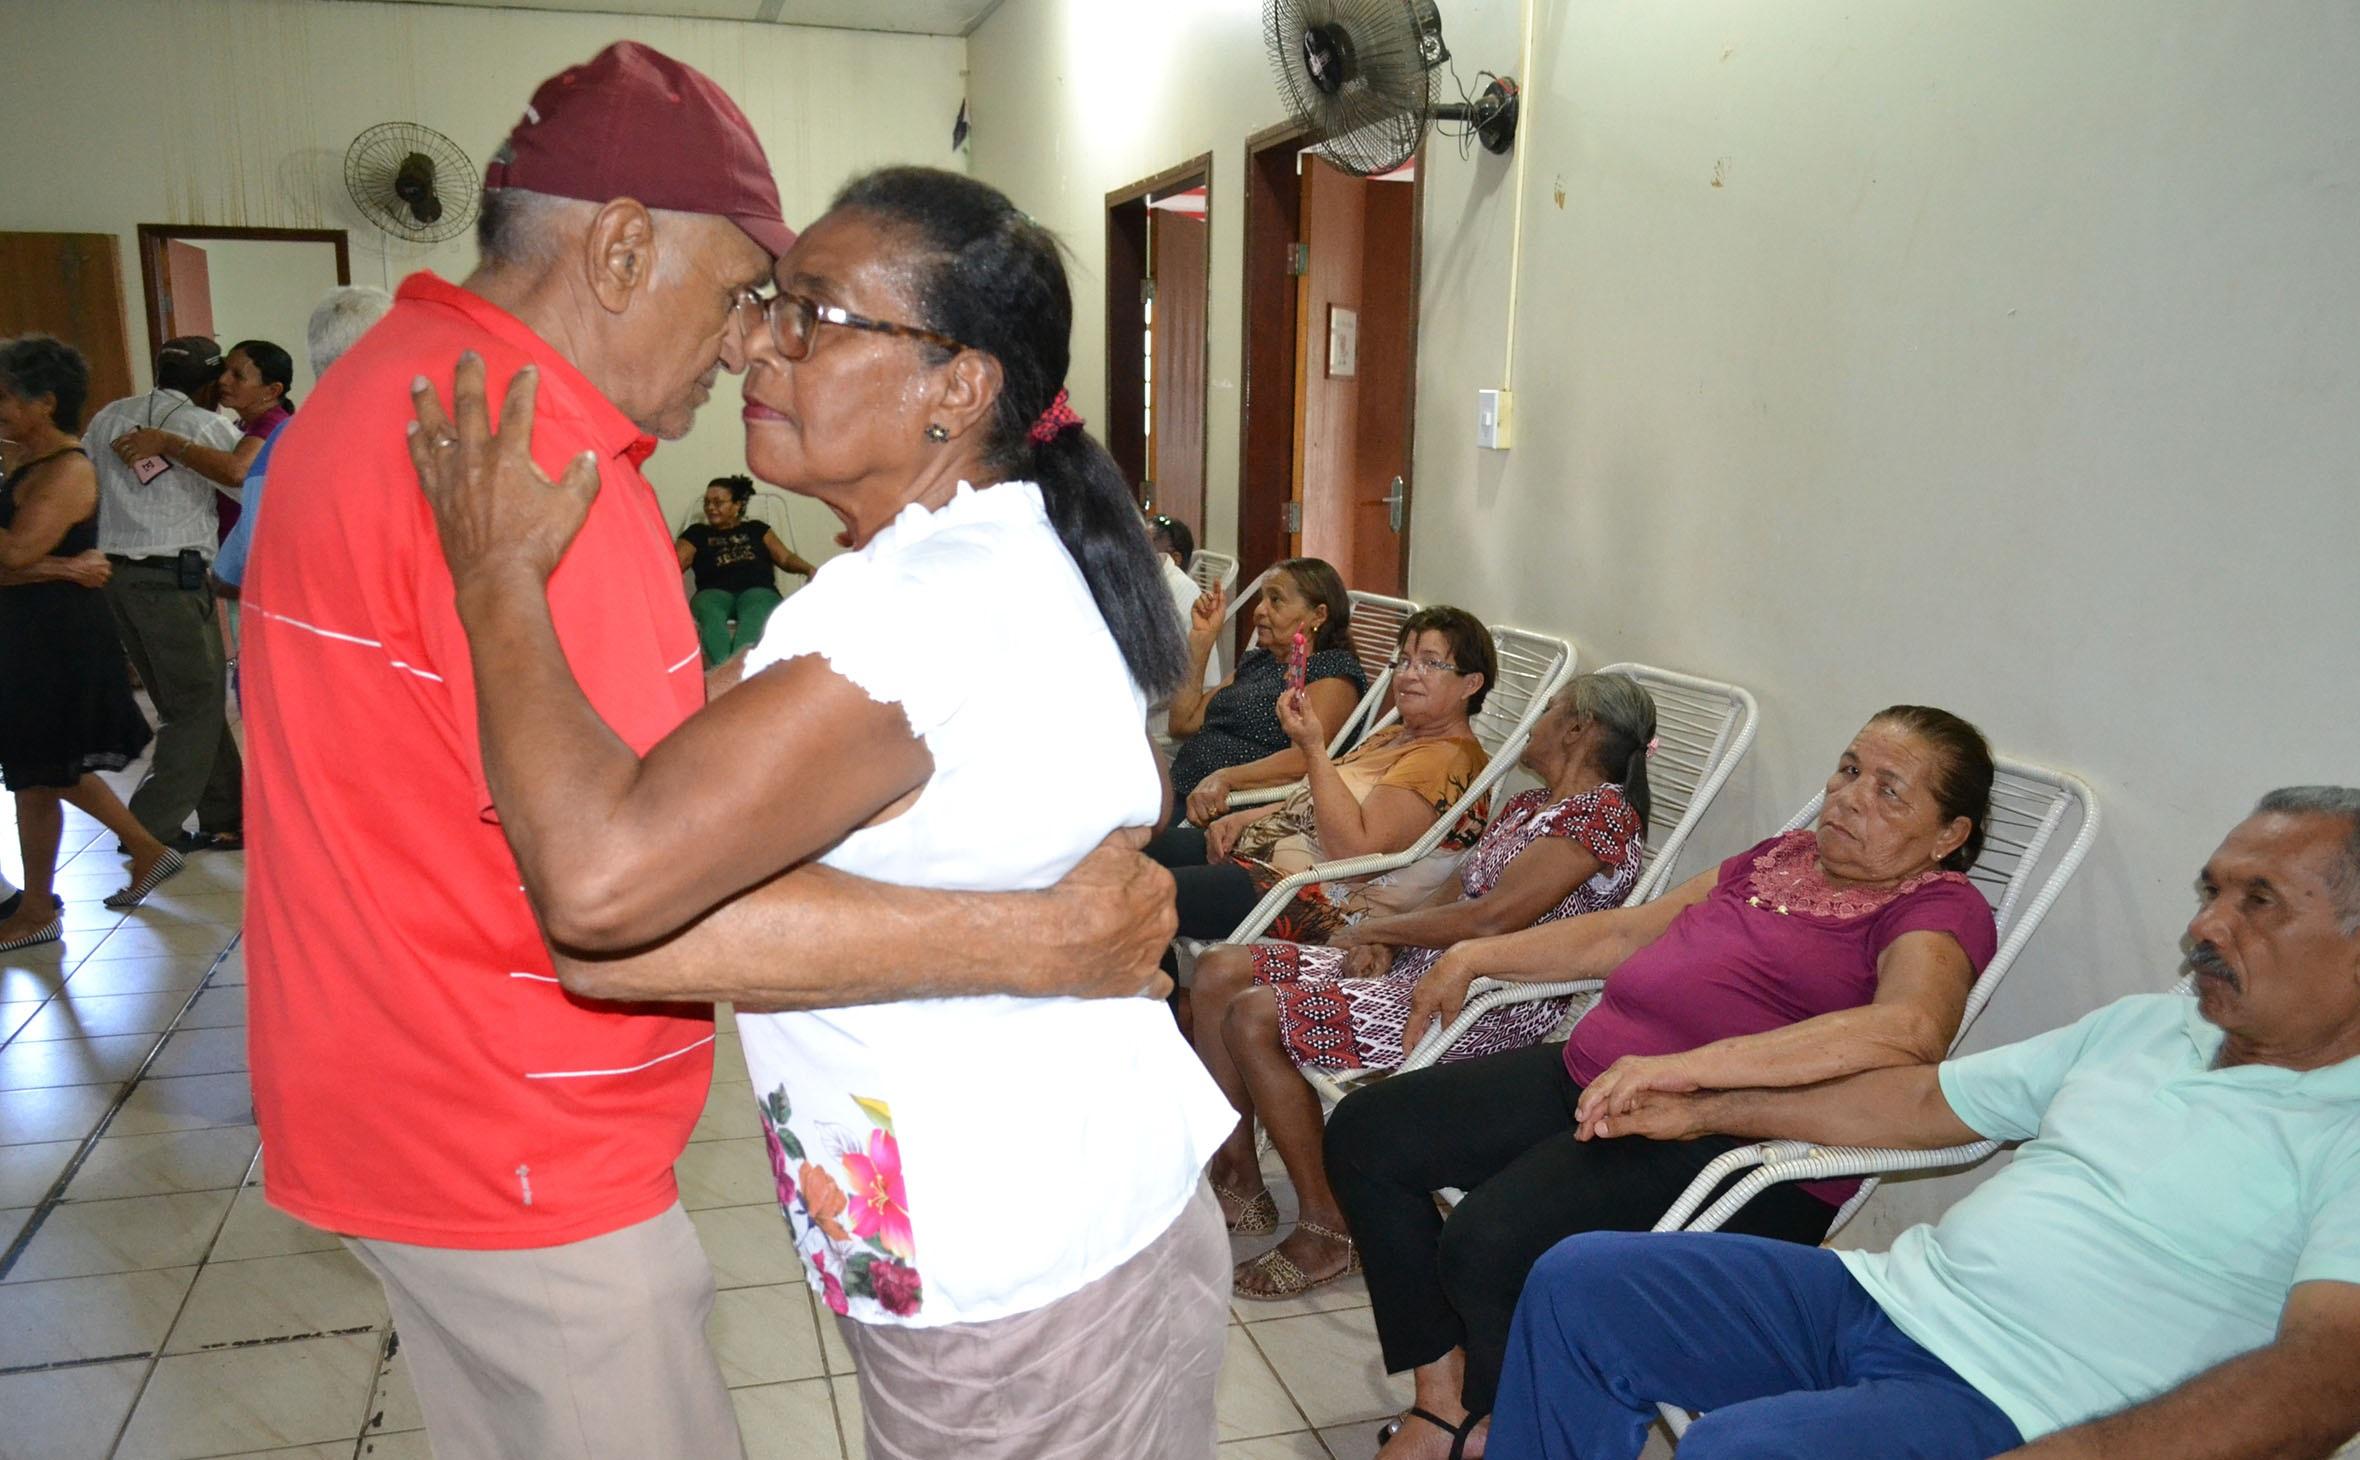 Dançando muito forró, idosos de Guaraí resgatam o prazer pela vida e criam laços de amizade